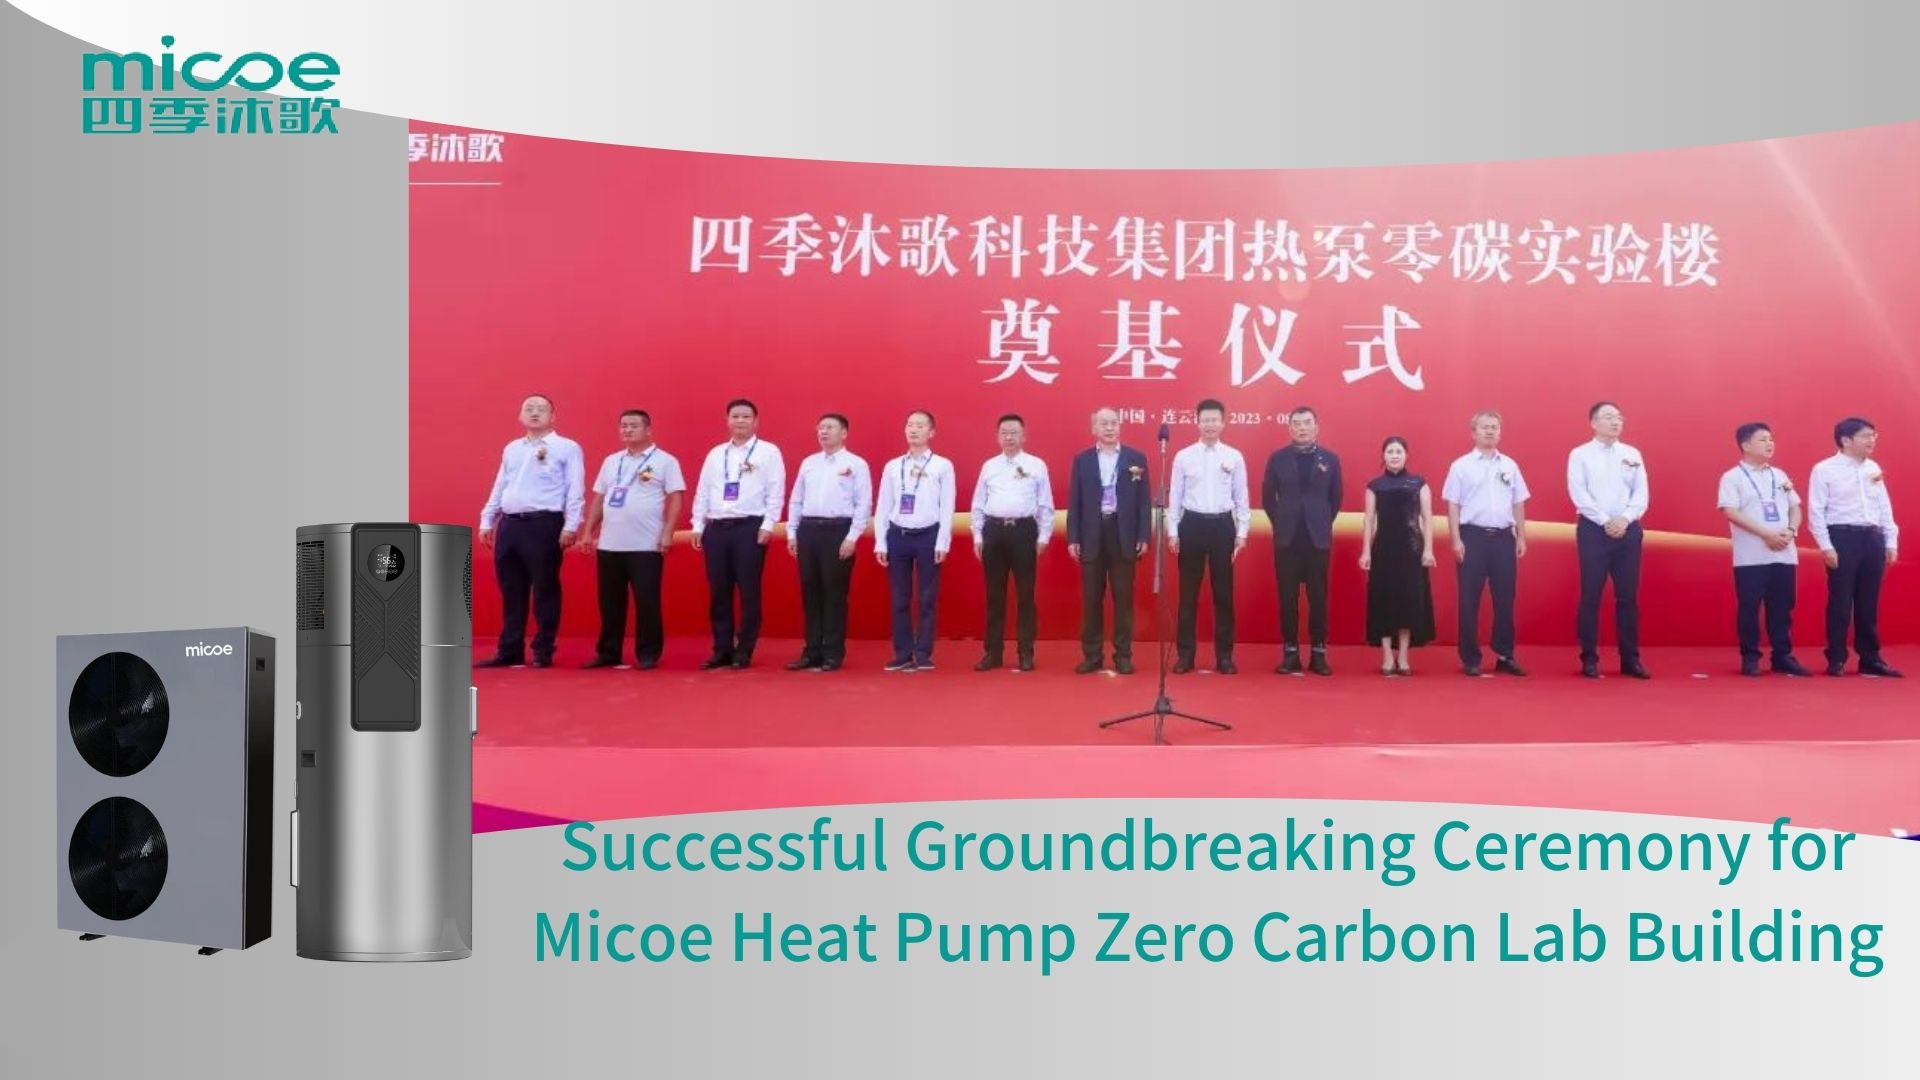 Cérémonie révolutionnaire réussie pour la pompe à chaleur Micoe Zero Carbon Lab Building